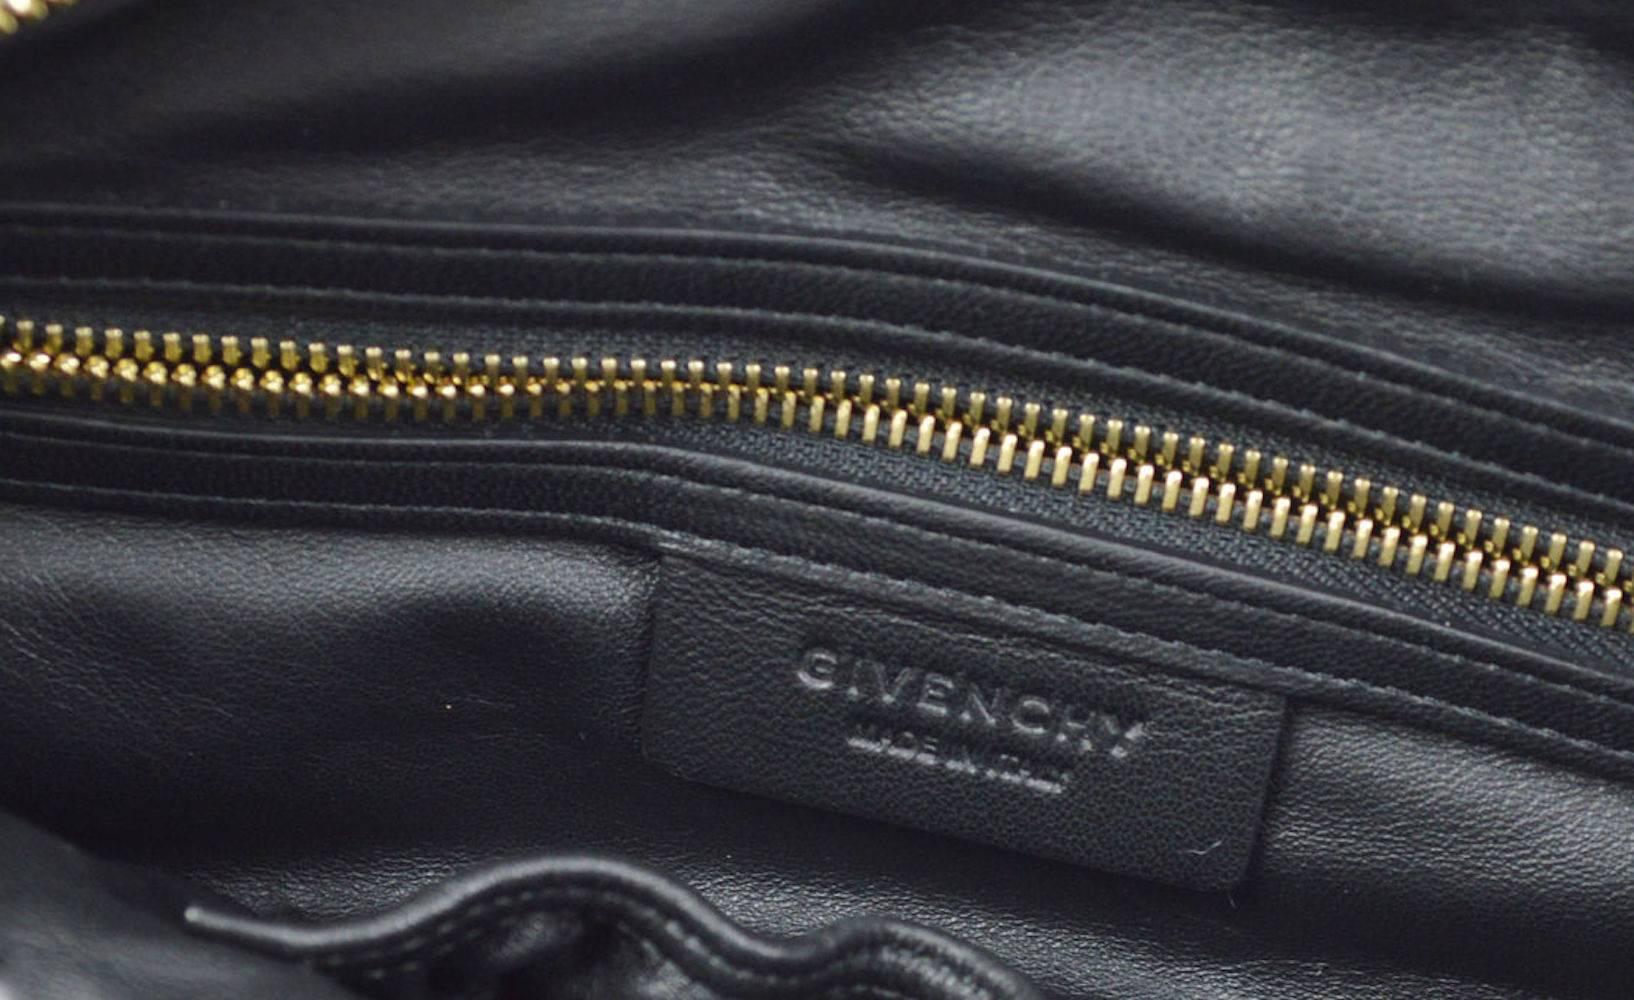 Givenchy Snakeskin Carryall Travel Top Handle Satchel Tote Shoulder Bag 1